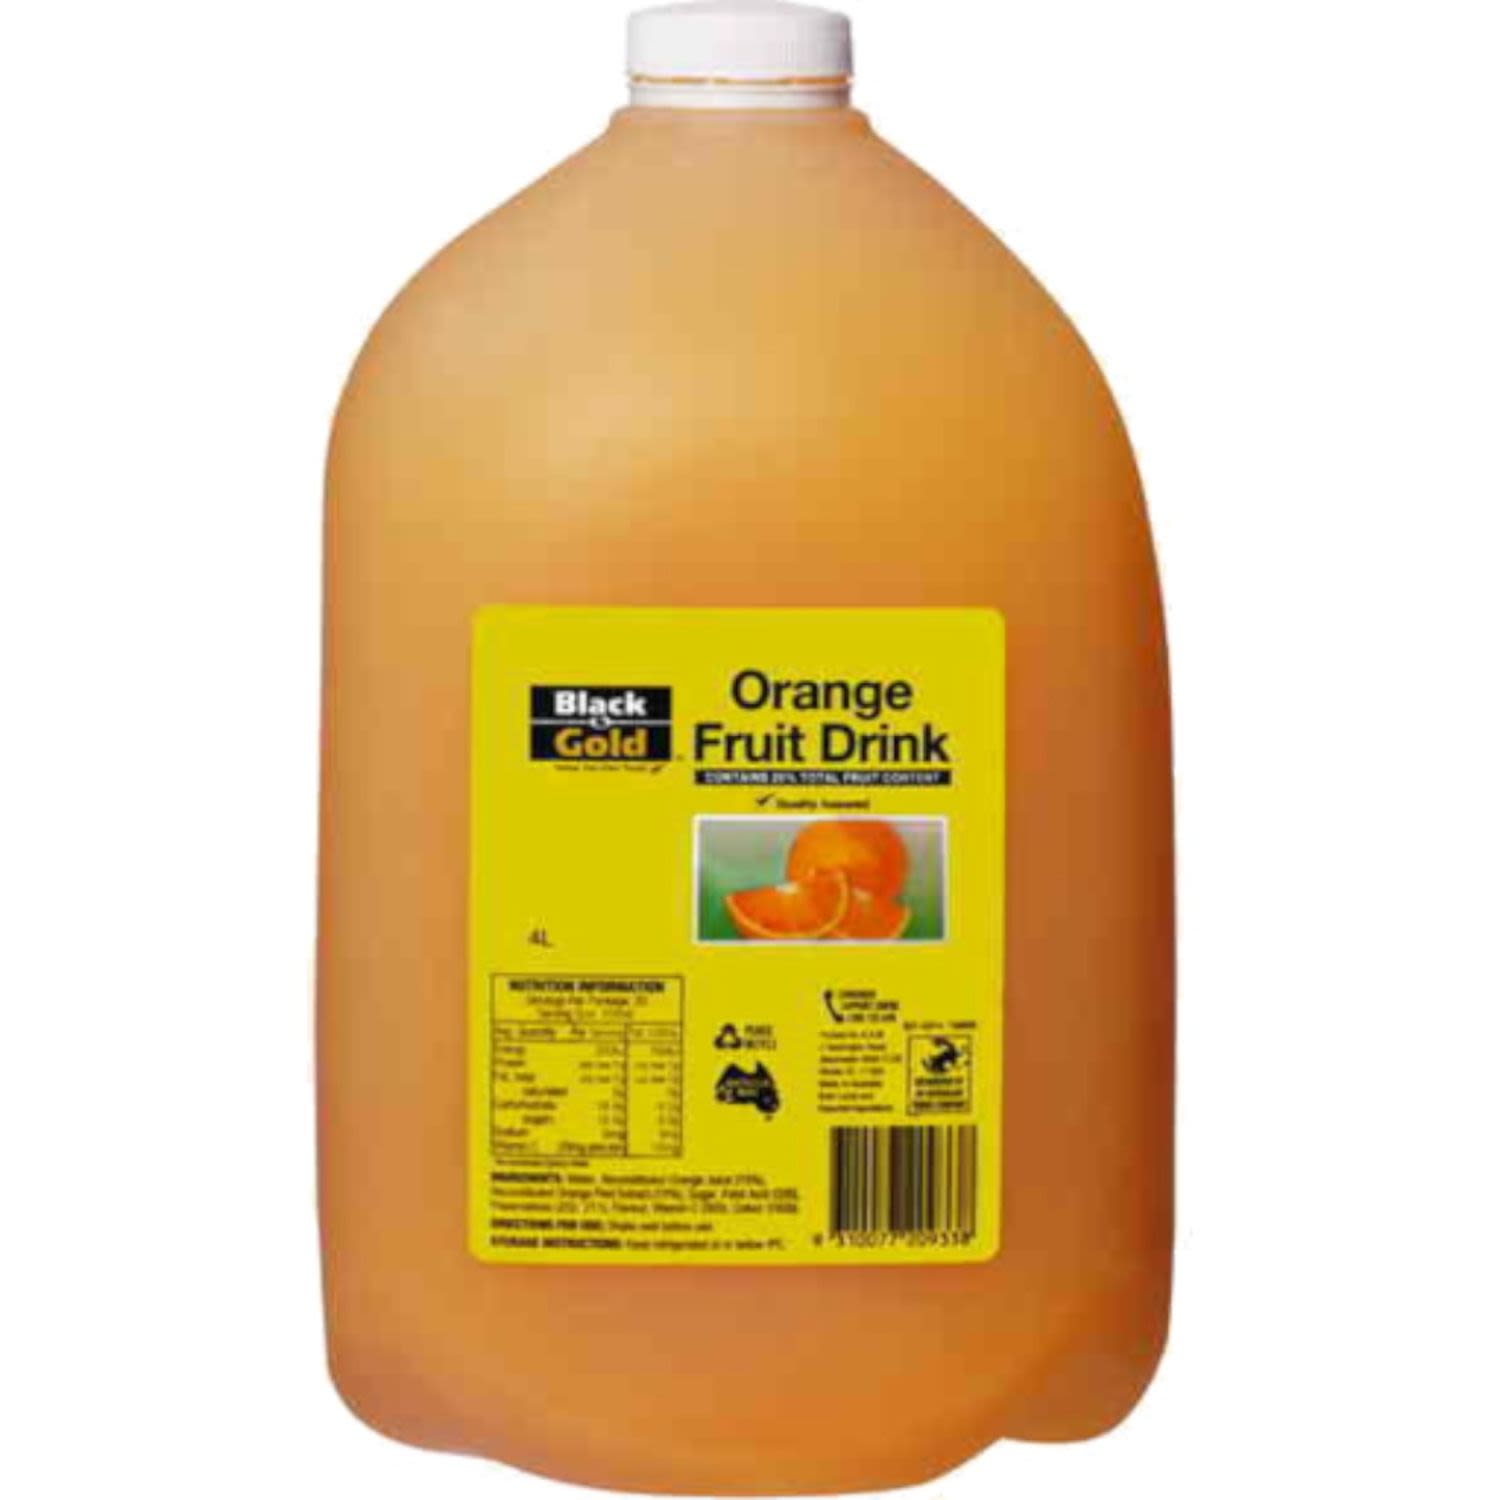 Black & Gold Orange Drink, 4 Litre